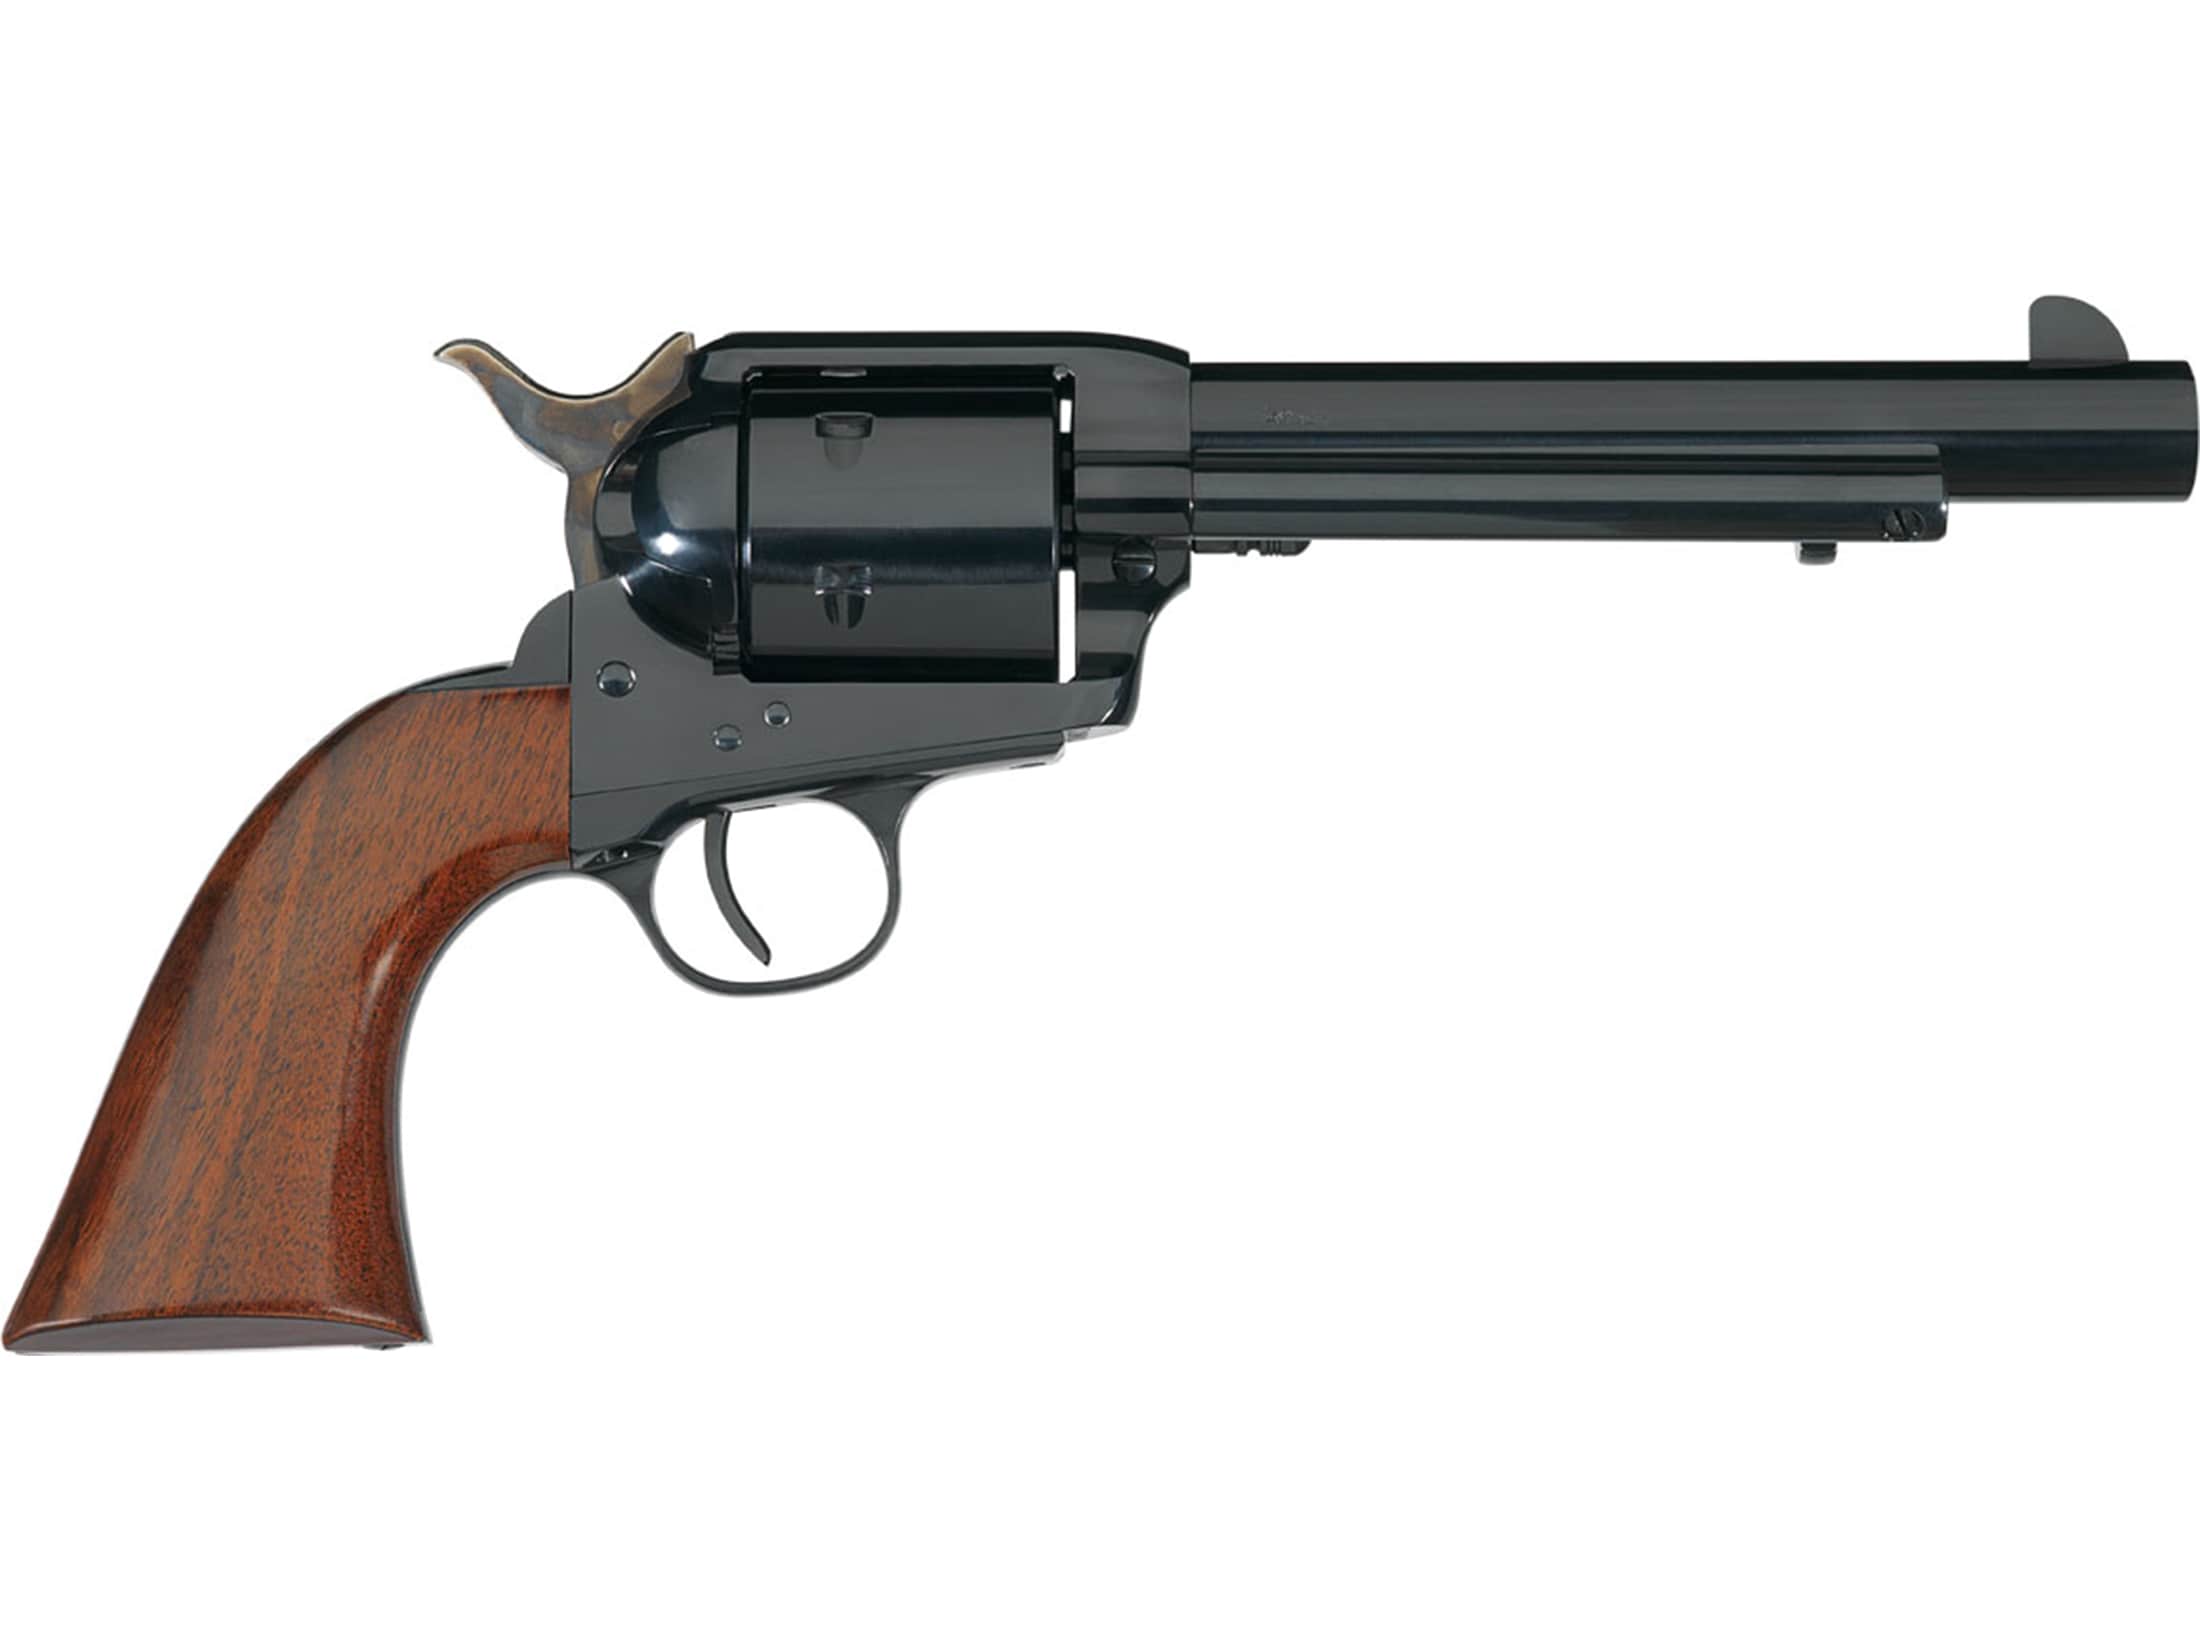 Image of Taylor's & Co 1873 Cattleman Single Action Revolver 44 Remington Magnum 6" Blued Barrel Blued Steel Frame Walnut Grips 6 Round